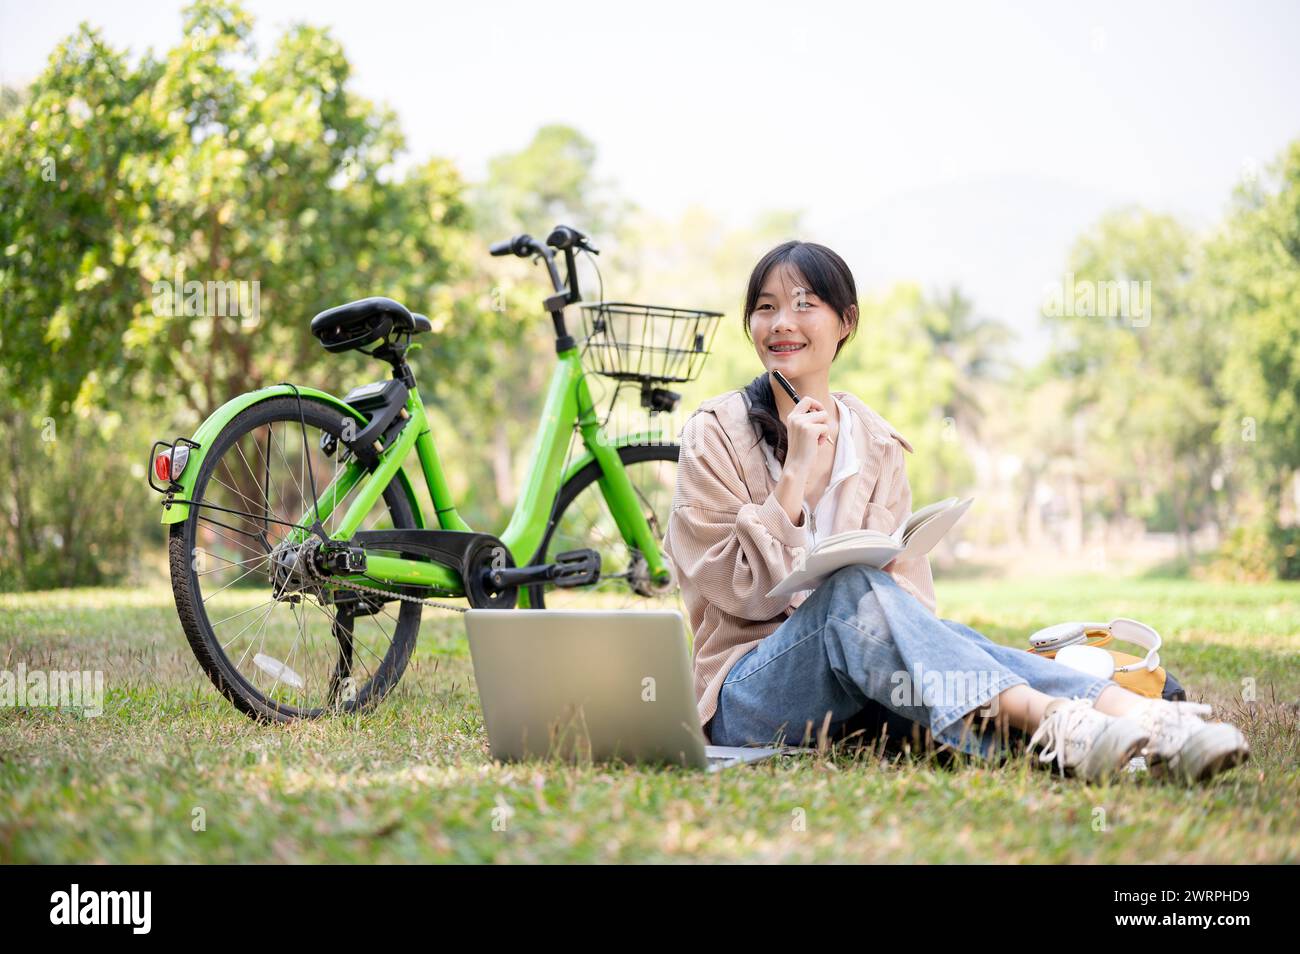 Una giovane studentessa asiatica, felice e positiva, sta facendo i compiti in un parco universitario, seduta sull'erba con il suo laptop, lo zaino e la bicicletta. Foto Stock